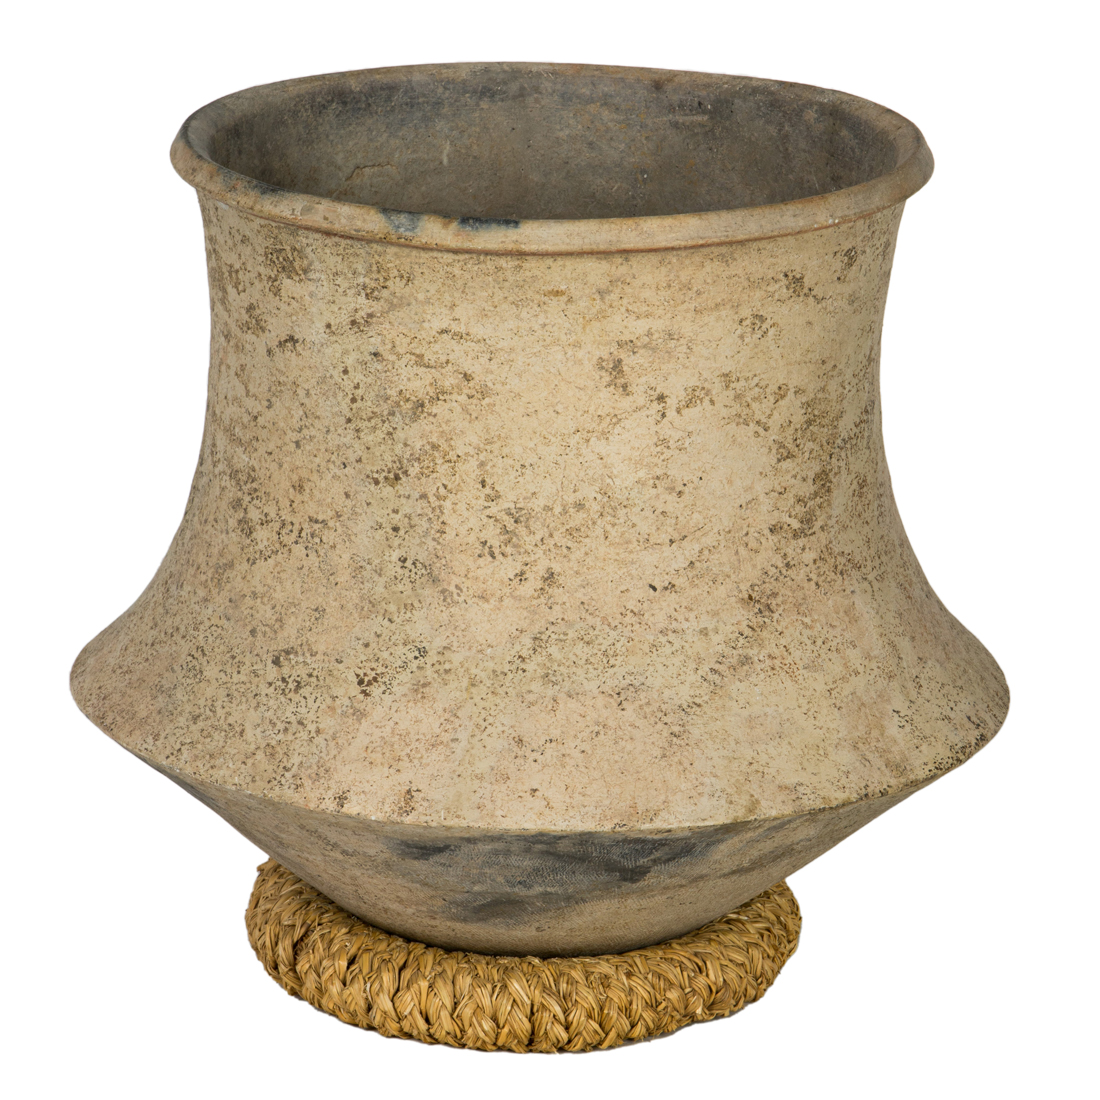 LARGE CLAY POT Large clay pot  3a0d68